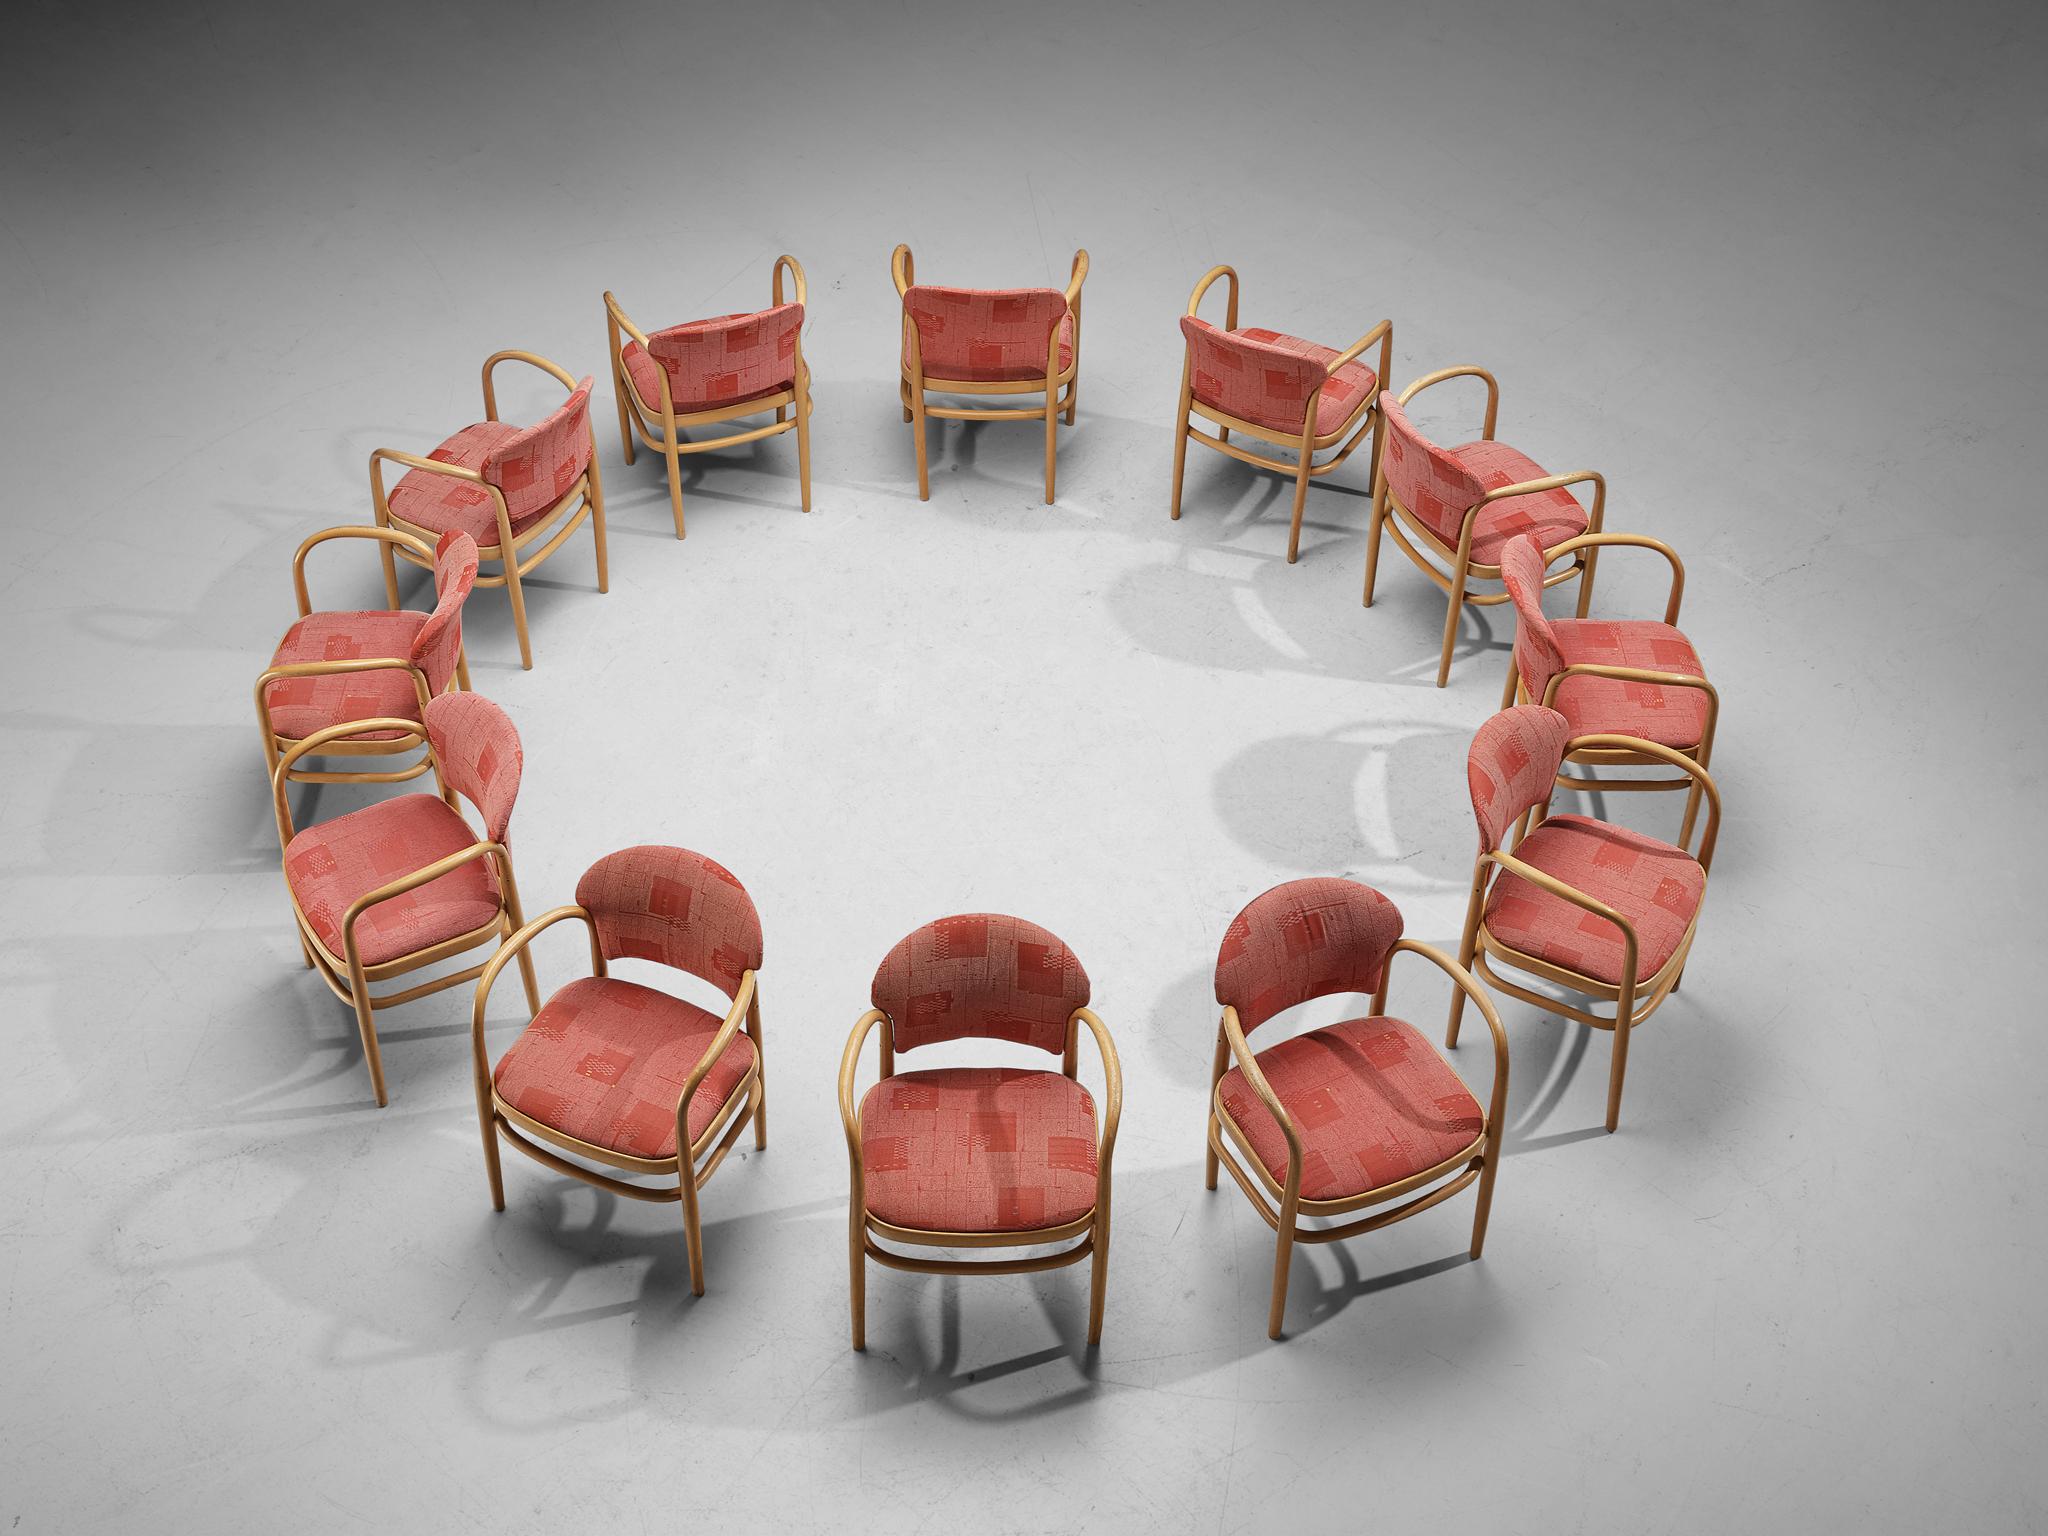 Ton, ensemble de douze fauteuils, bois courbé, revêtement en tissu, hêtre, République tchèque, années 1960

Cet élégant ensemble de chaises de salle à manger, fabriqué par Eleg, présente une merveilleuse structure en bois courbé. La forme ronde du